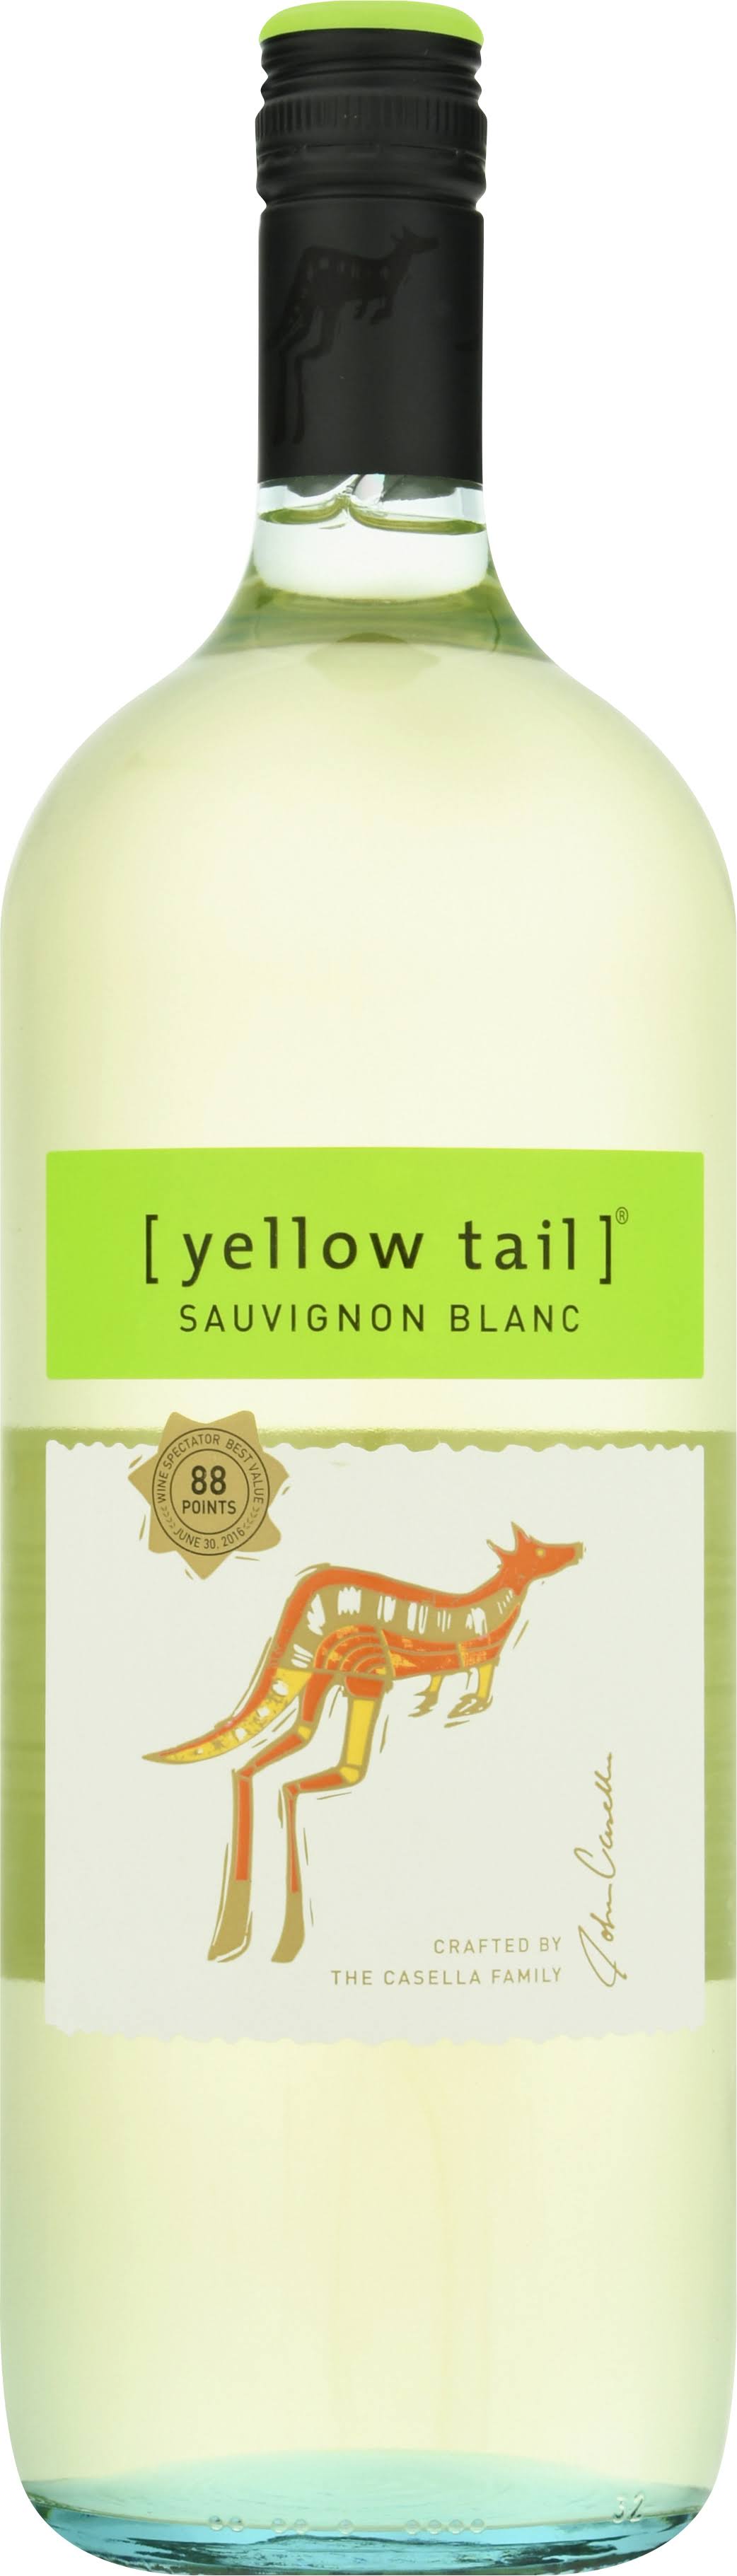 Yellow Tail Sauvignon Blanc, Australia - 1.5 l